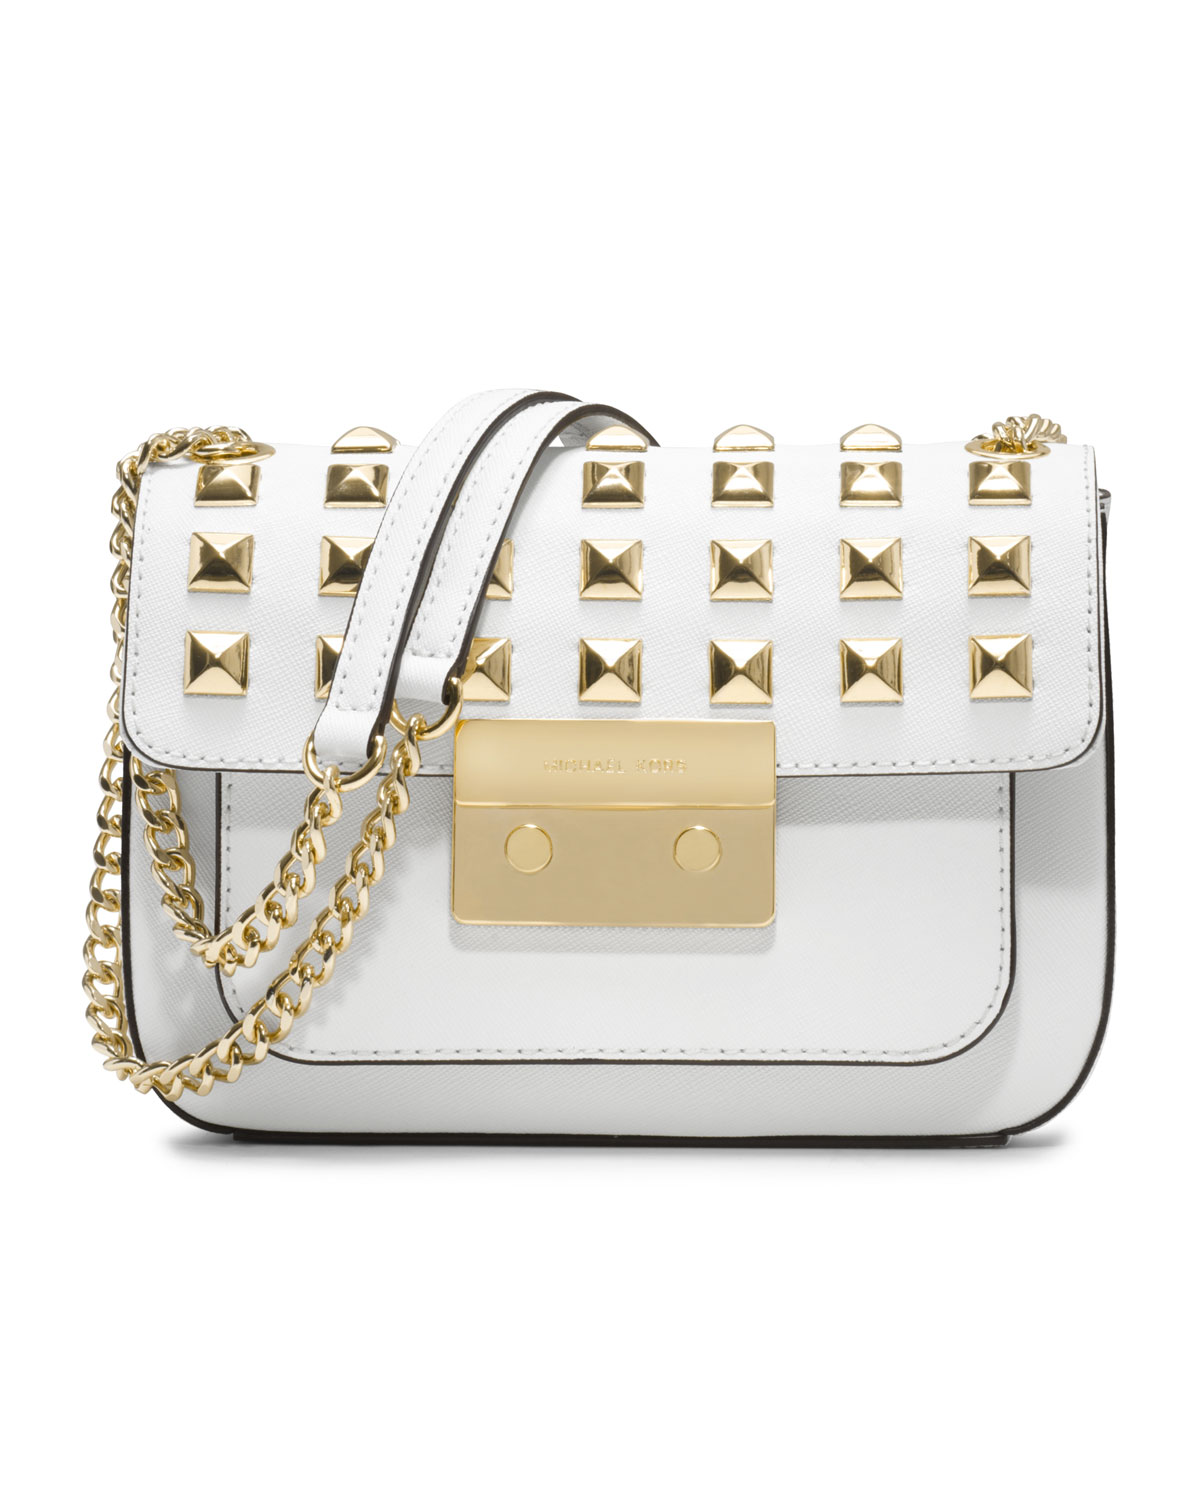 michael kors white handbag with gold studs